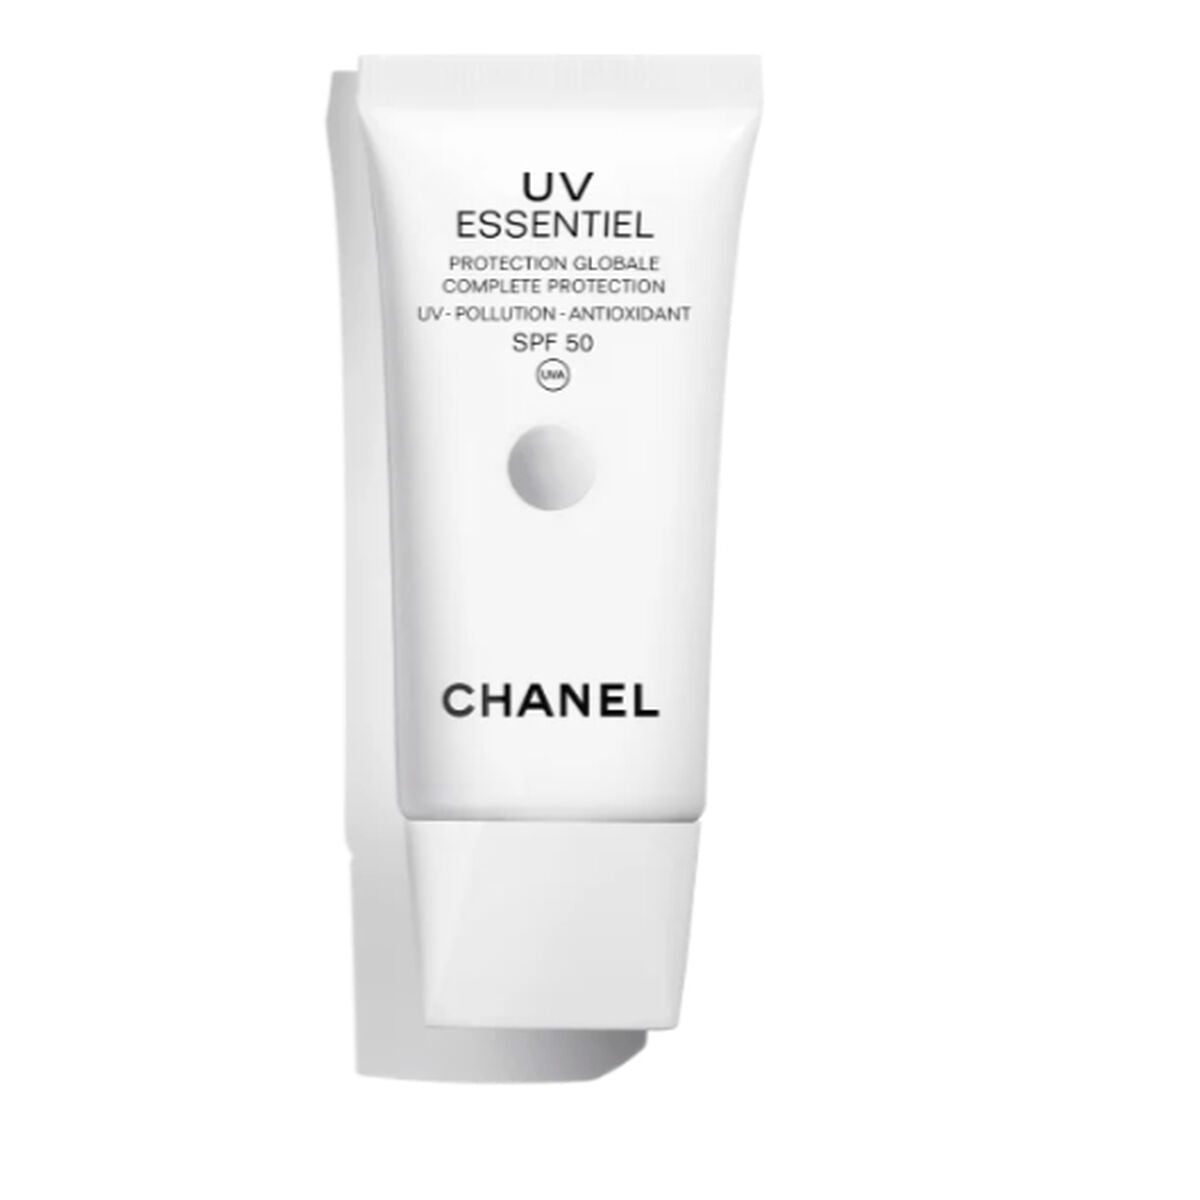 Kaufe Sonnencreme Chanel UV Essentiel Spf 50 30 ml bei AWK Flagship um € 78.00